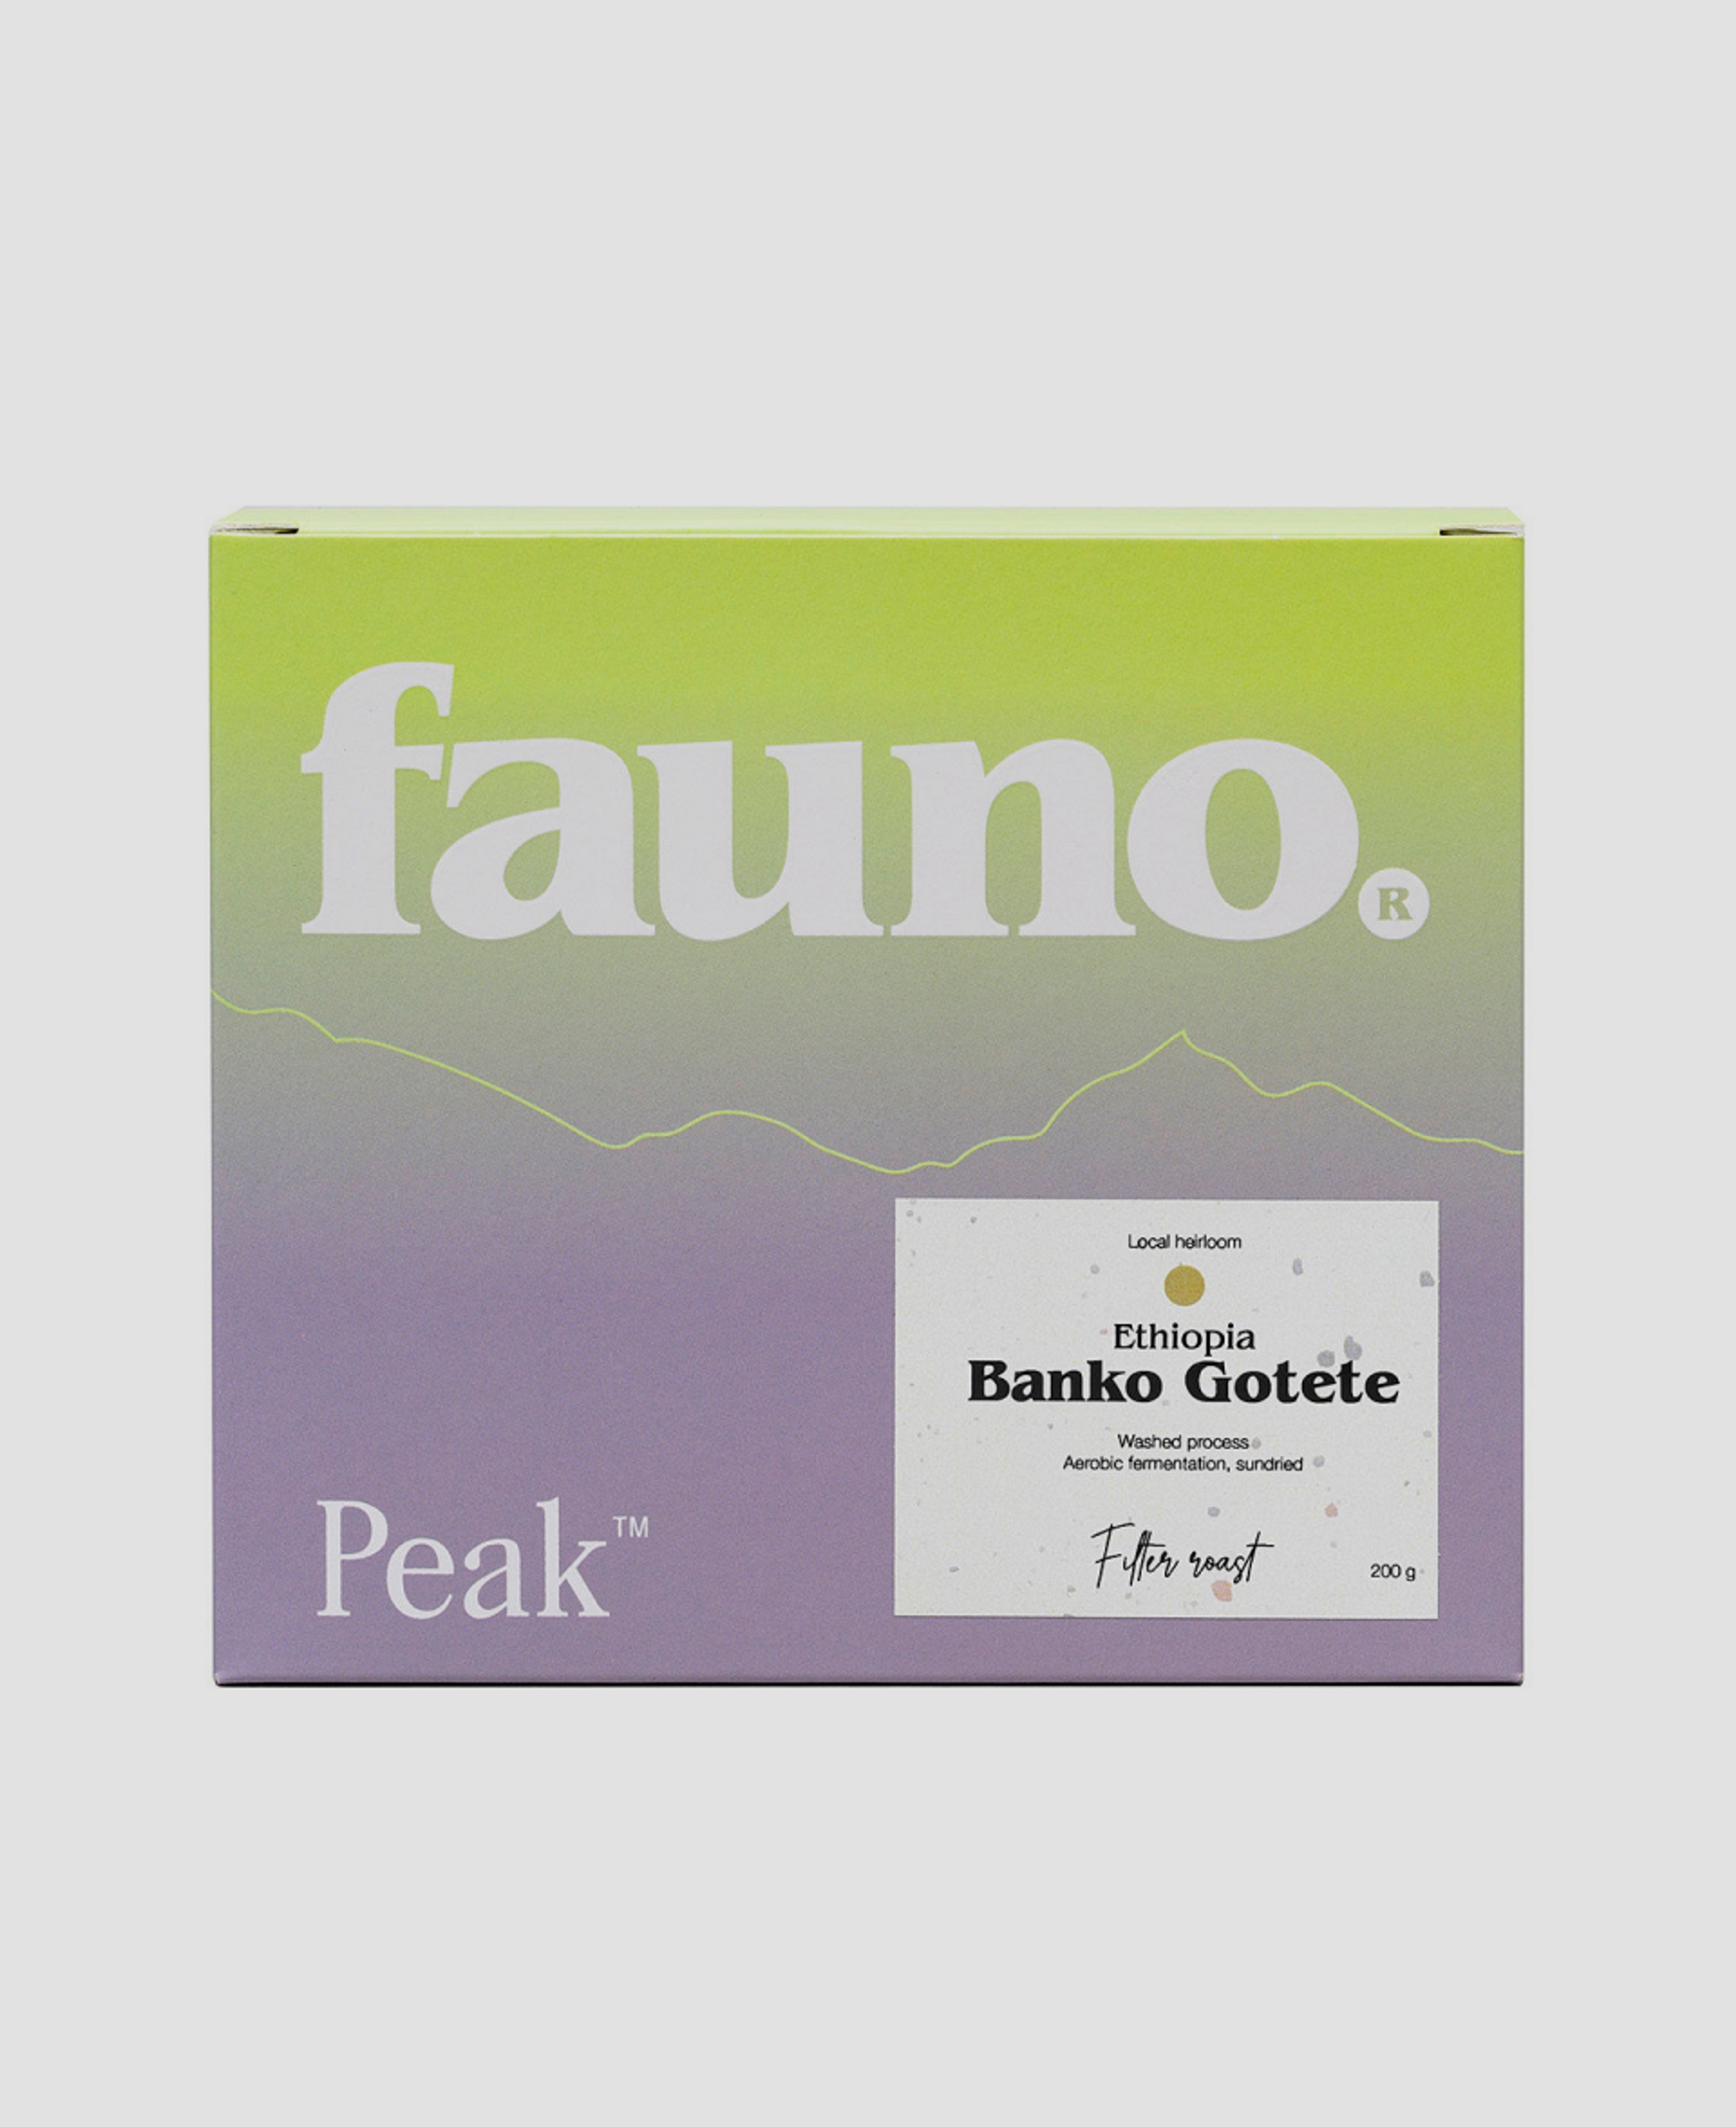 Кофе Peak × Fauno